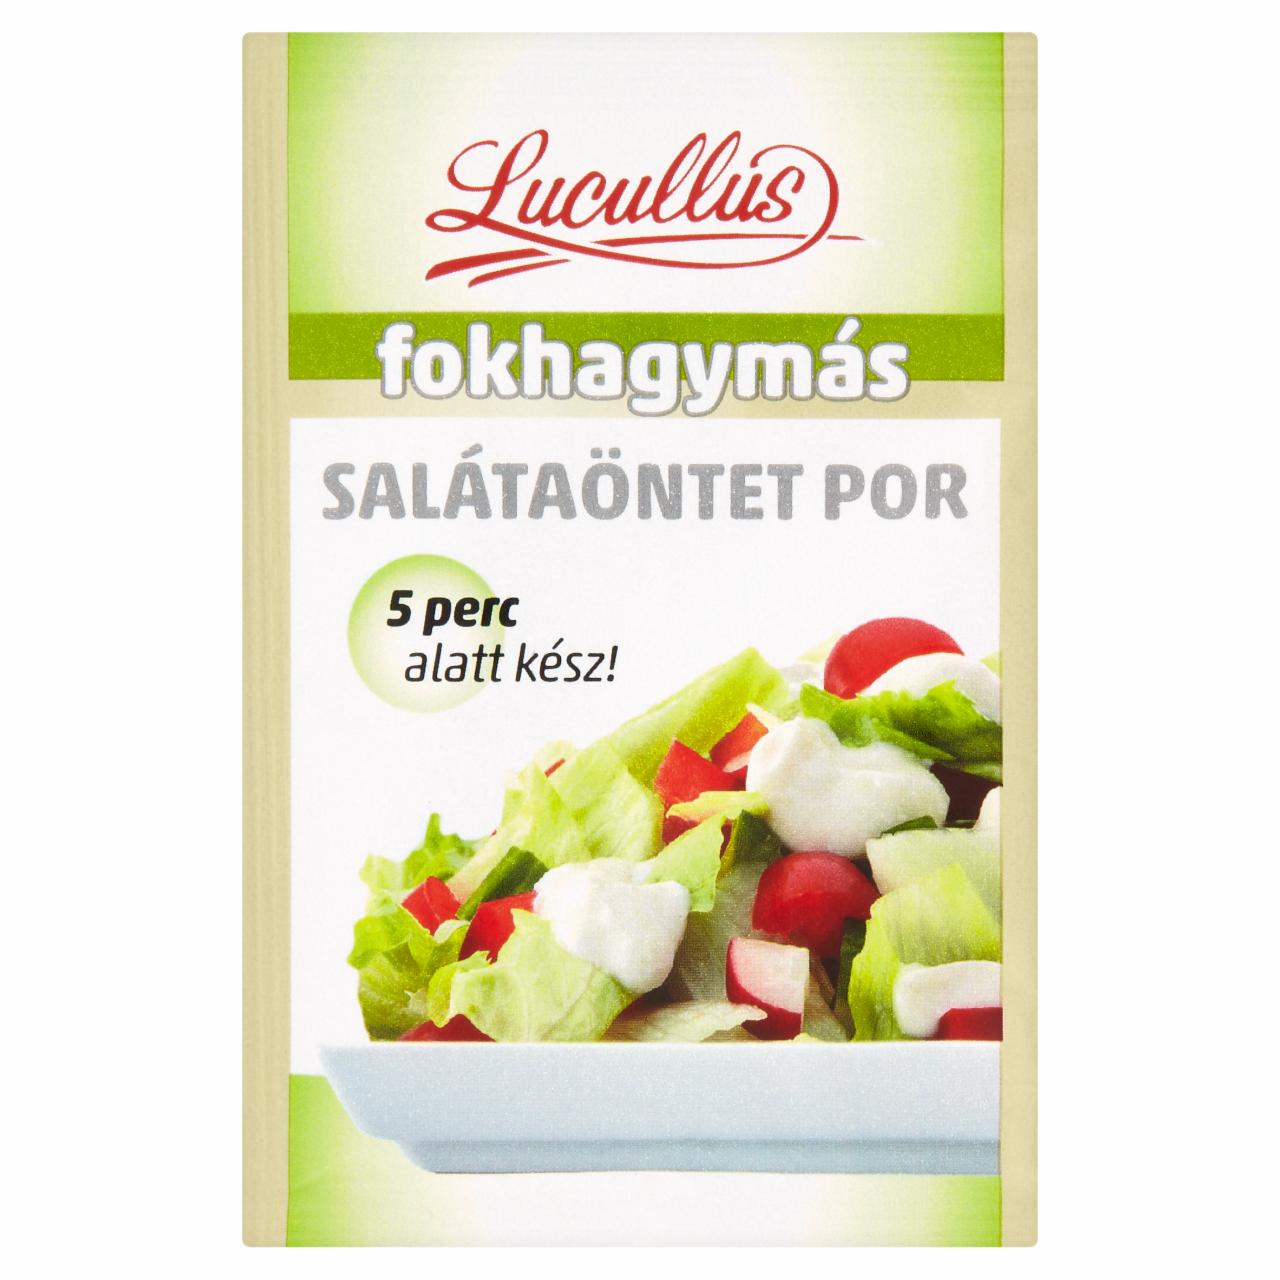 Képek - Lucullus fokhagymás salátaöntet por 12 g